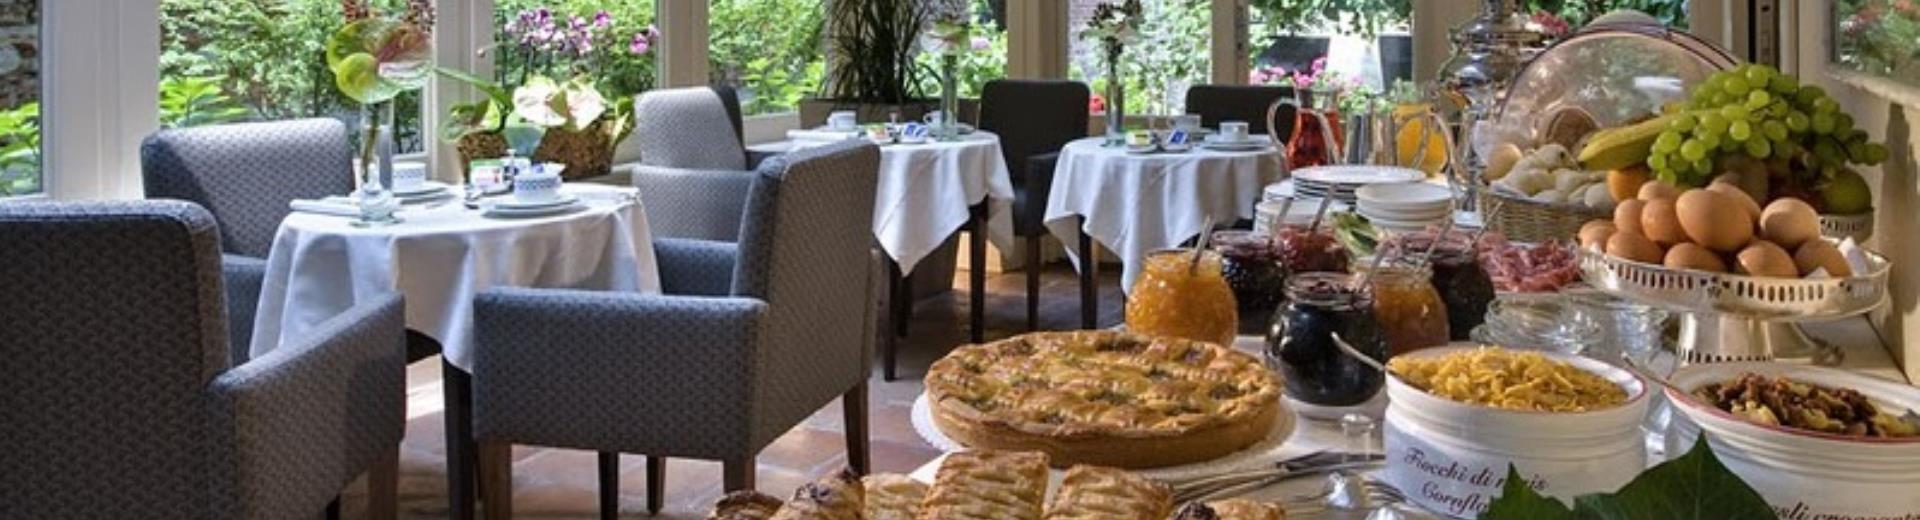 Der Frühstücksraum im Best Western Hotel Piemontese Bergamo